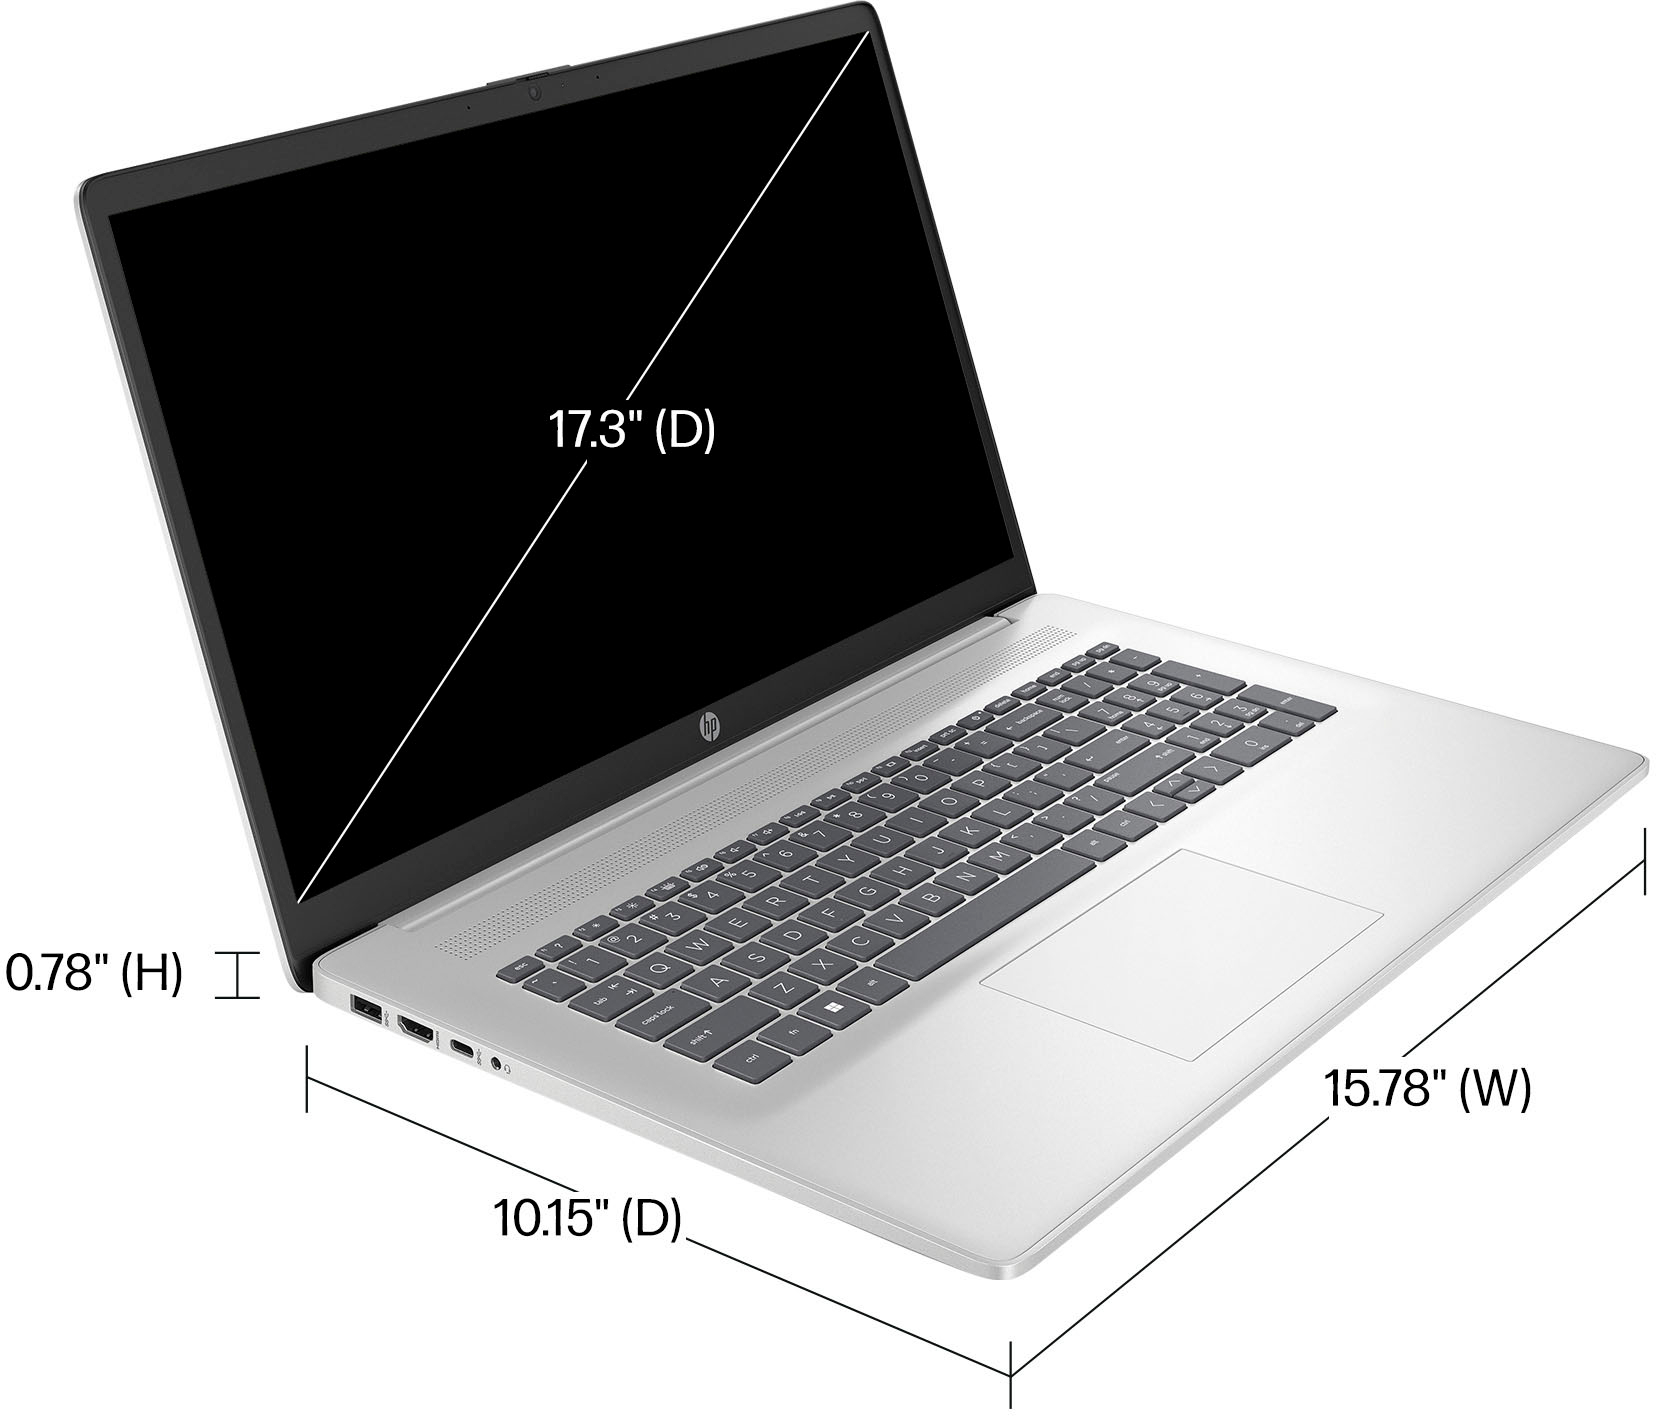 HP Laptop 17-cp3000sf PC Portable 17.3 Full HD IPS (AMD Ryzen 7